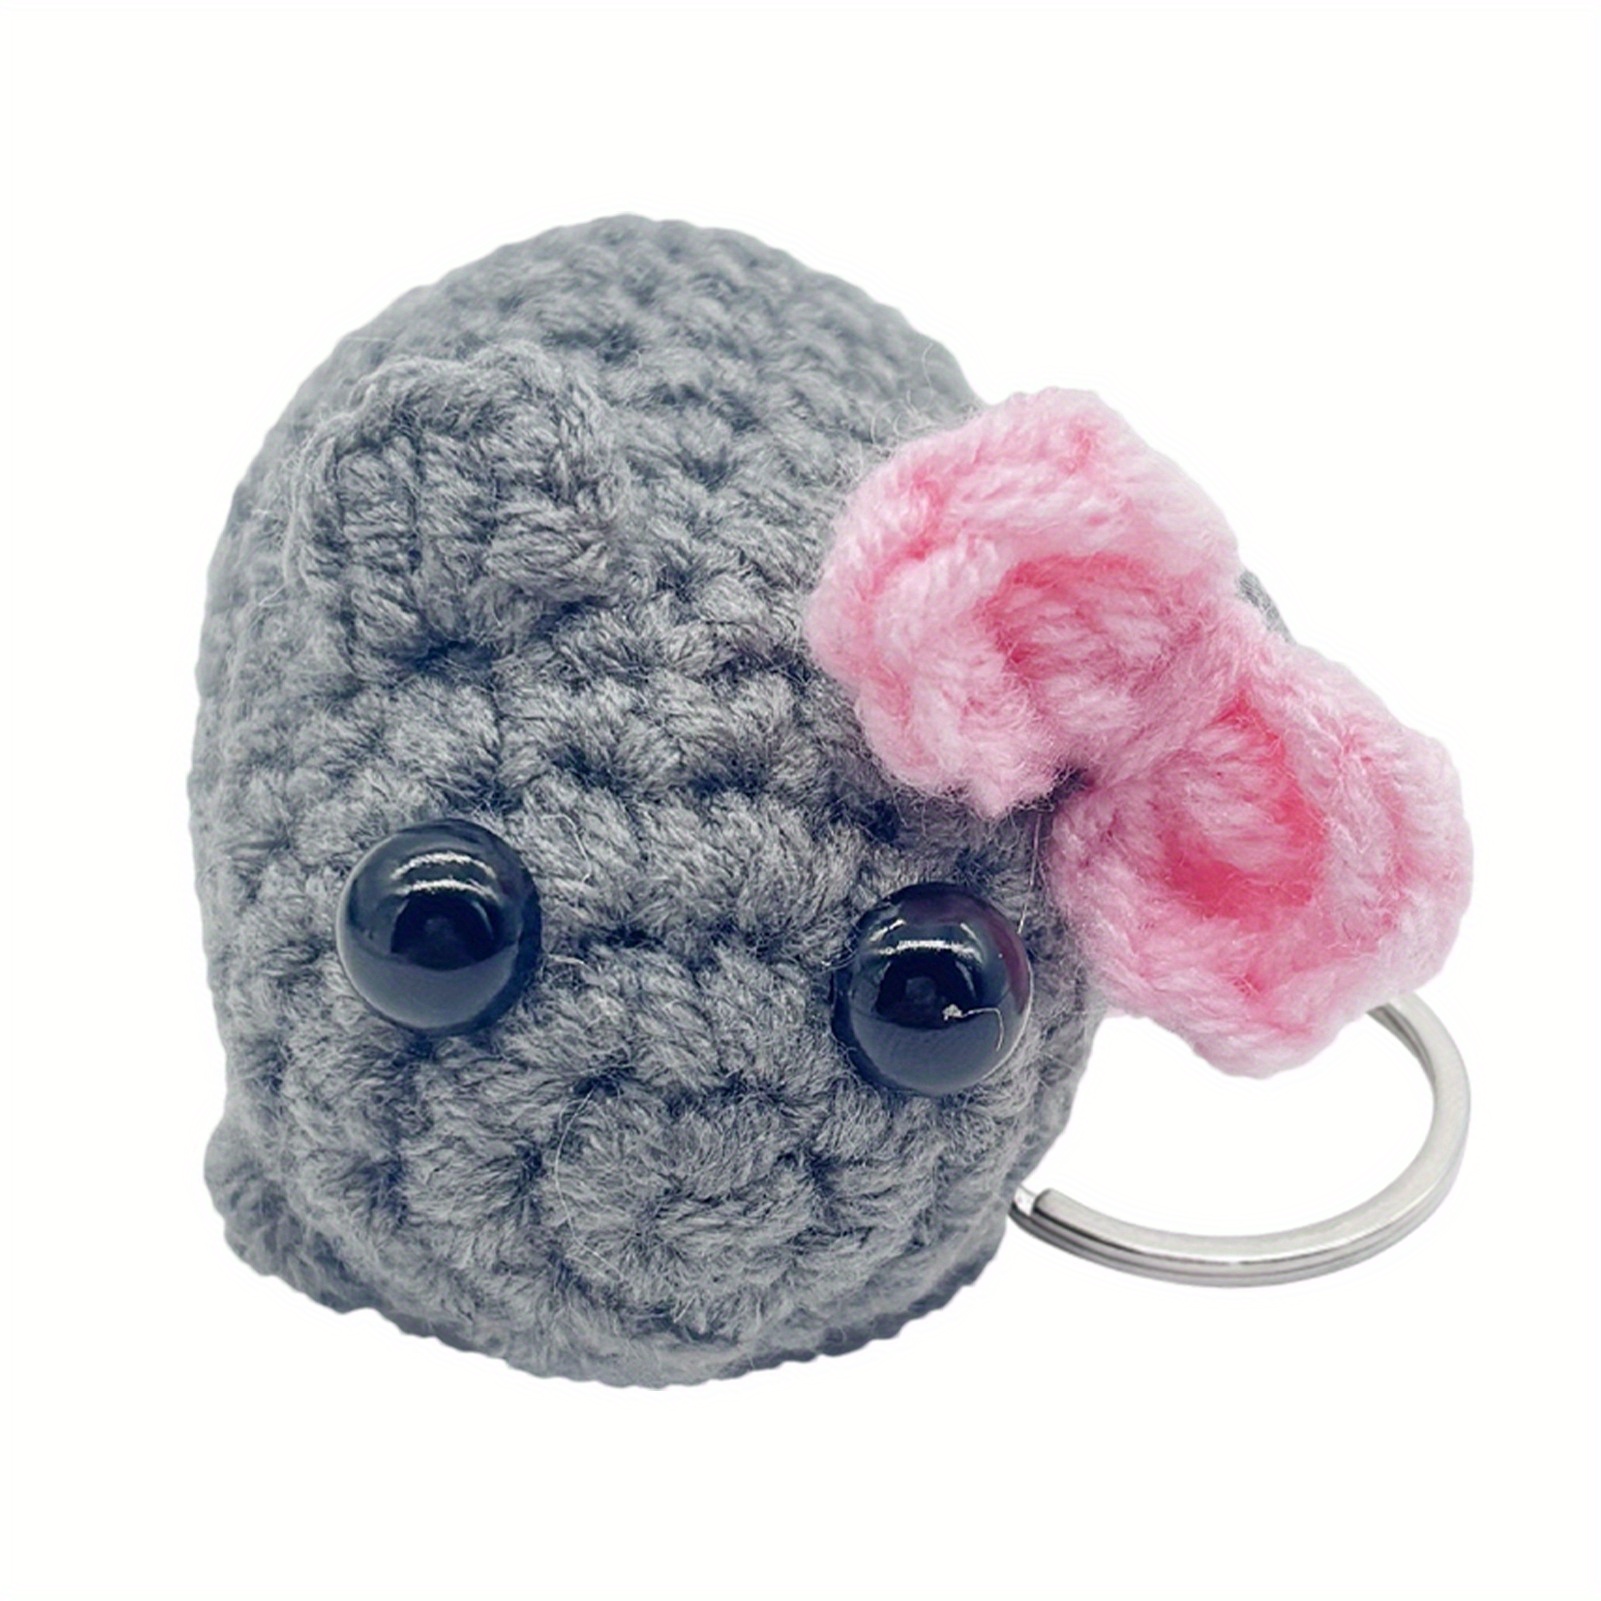 

Adorable Crochet Sad Hamster Keychain With Bow - Plush Bag Charm & Handmade Gift, Gray